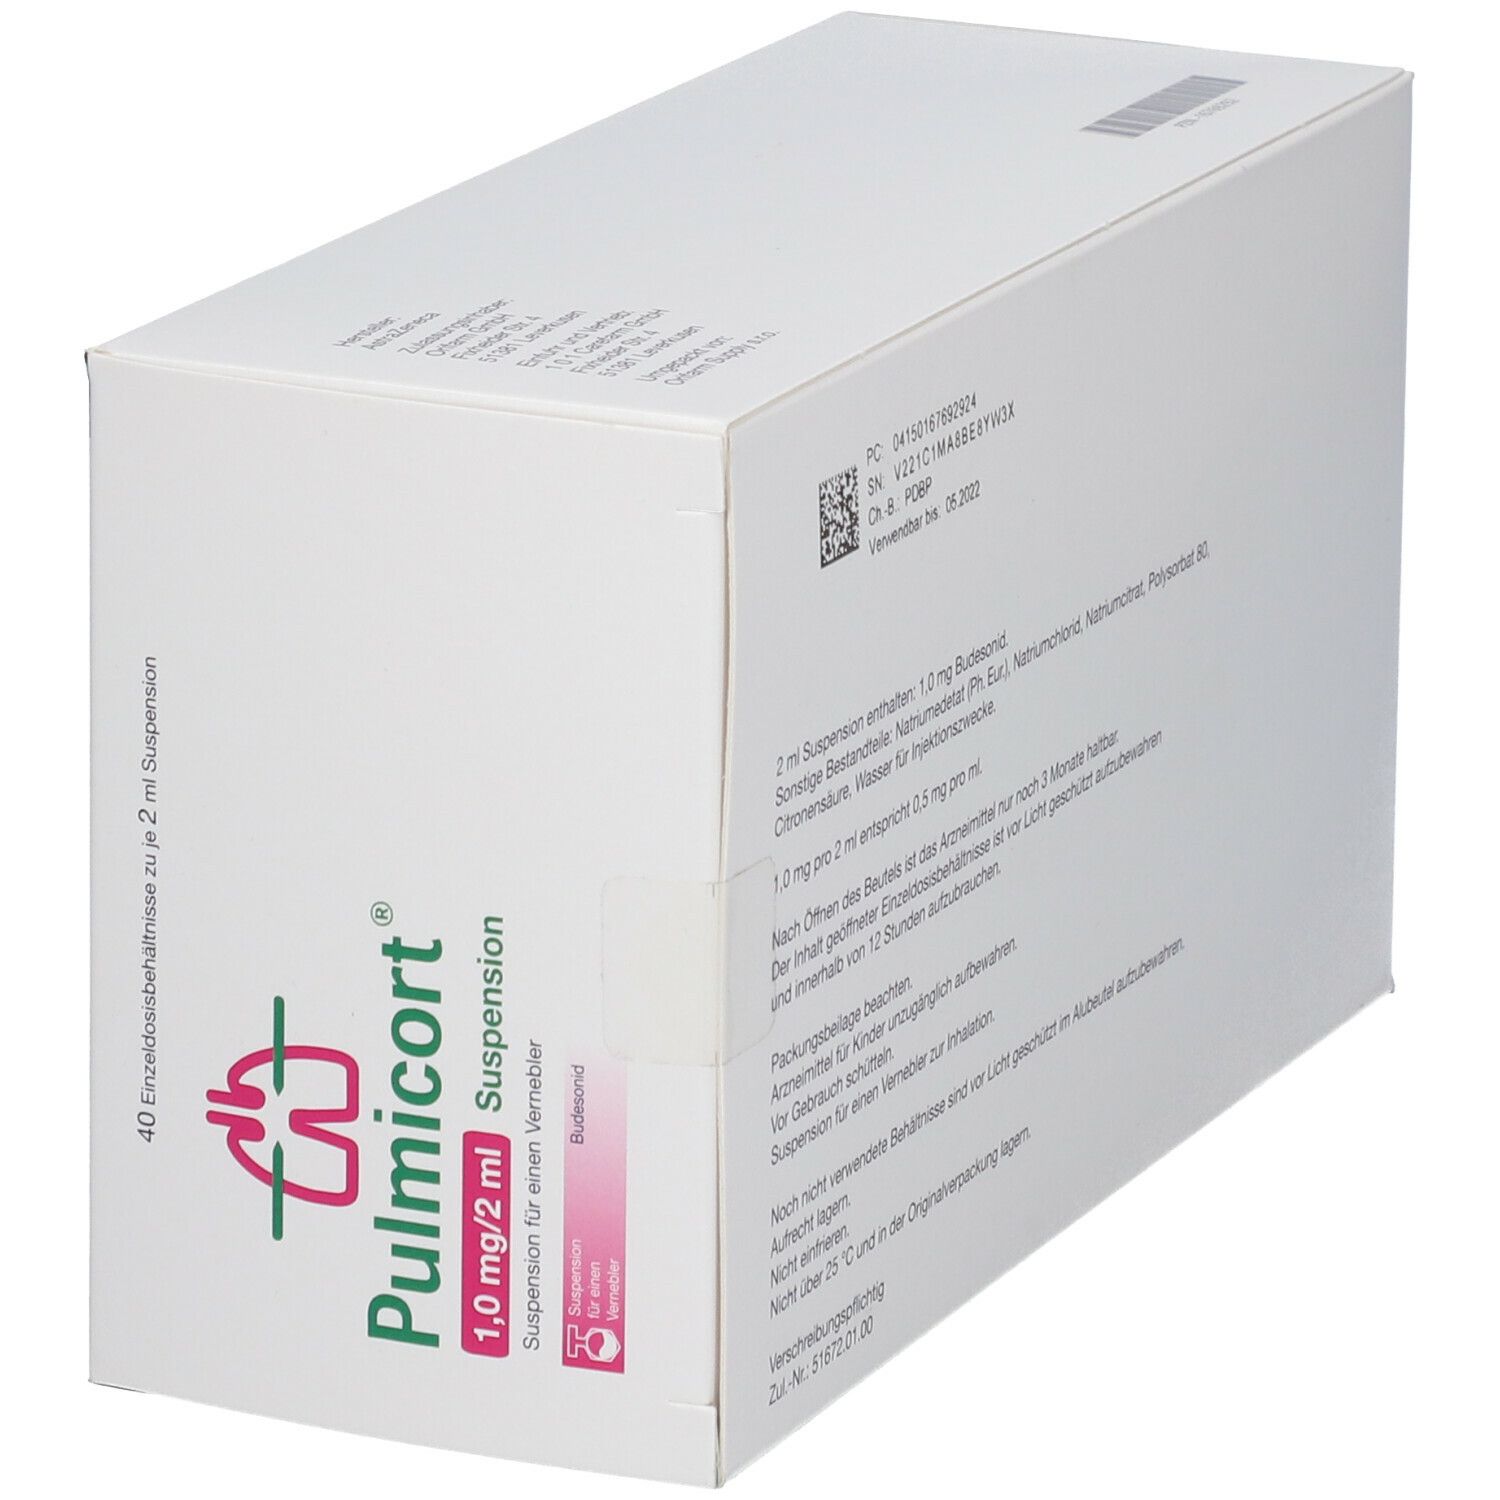 Pulmicort® 1 mg/2 ml